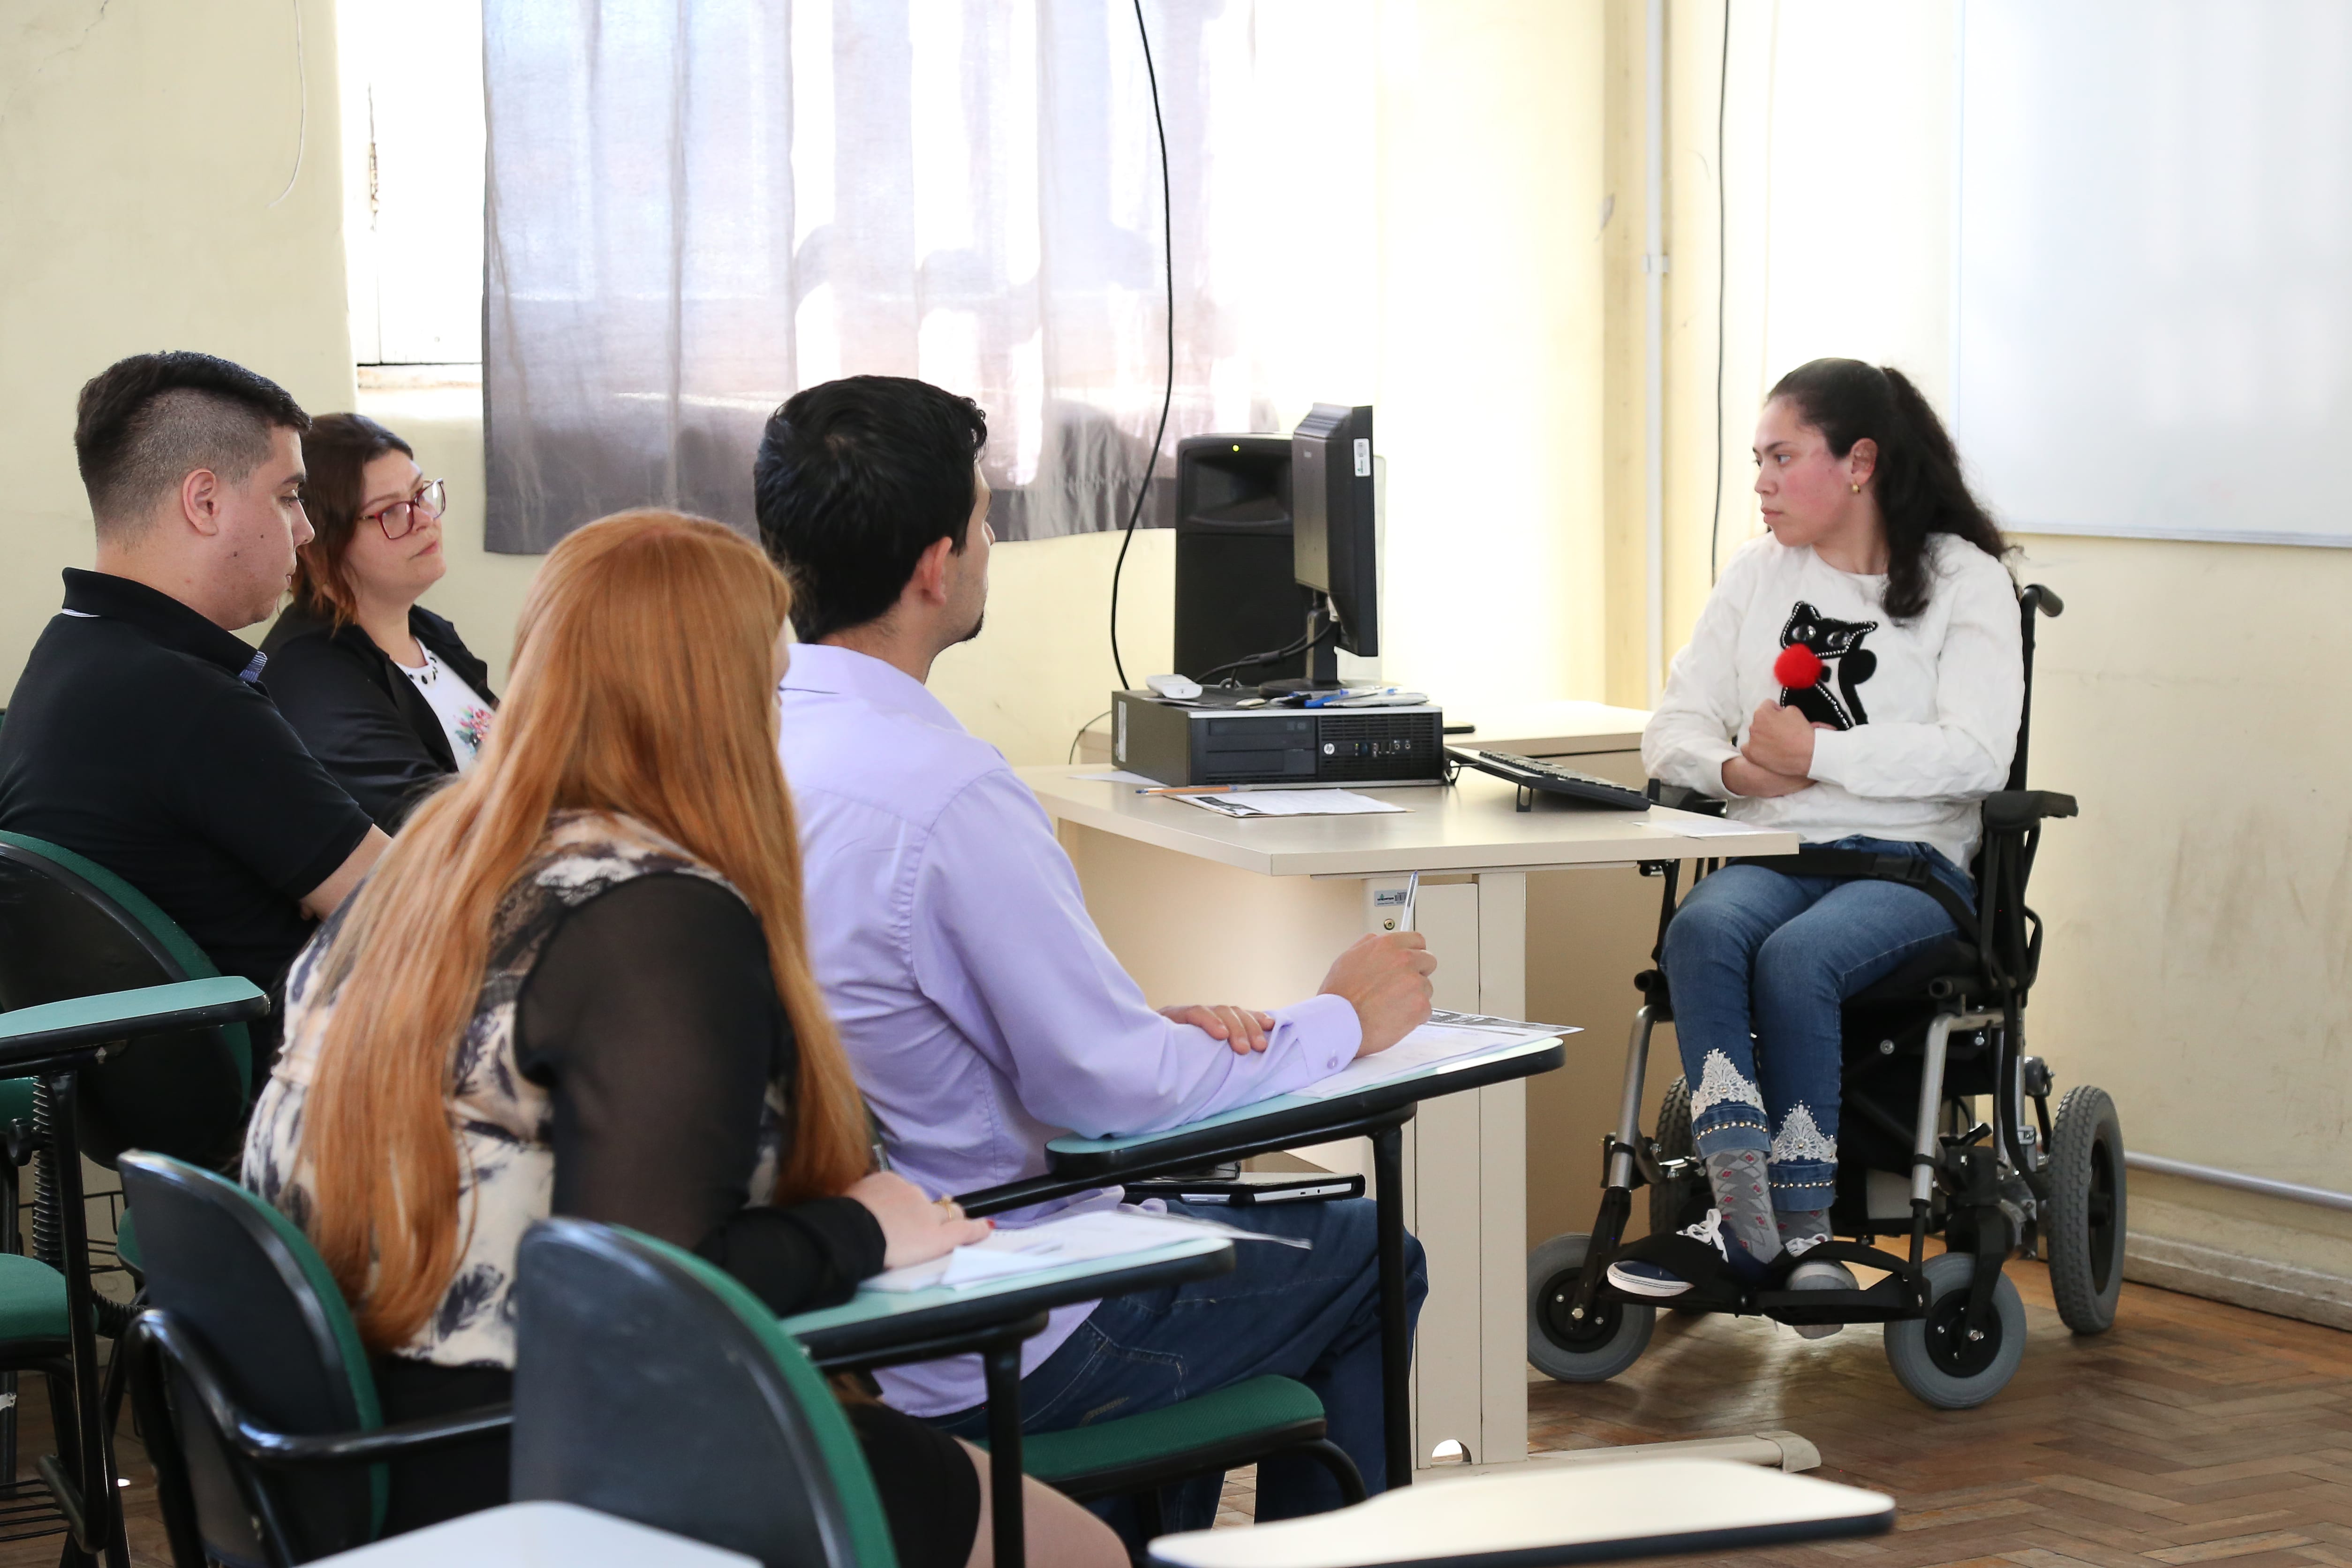 Estudante da Unipampa, que utiliza cadeira de rodas, apresenta trabalho sobre acessibilidade em seminário. Crédito: Milene Marchezan.